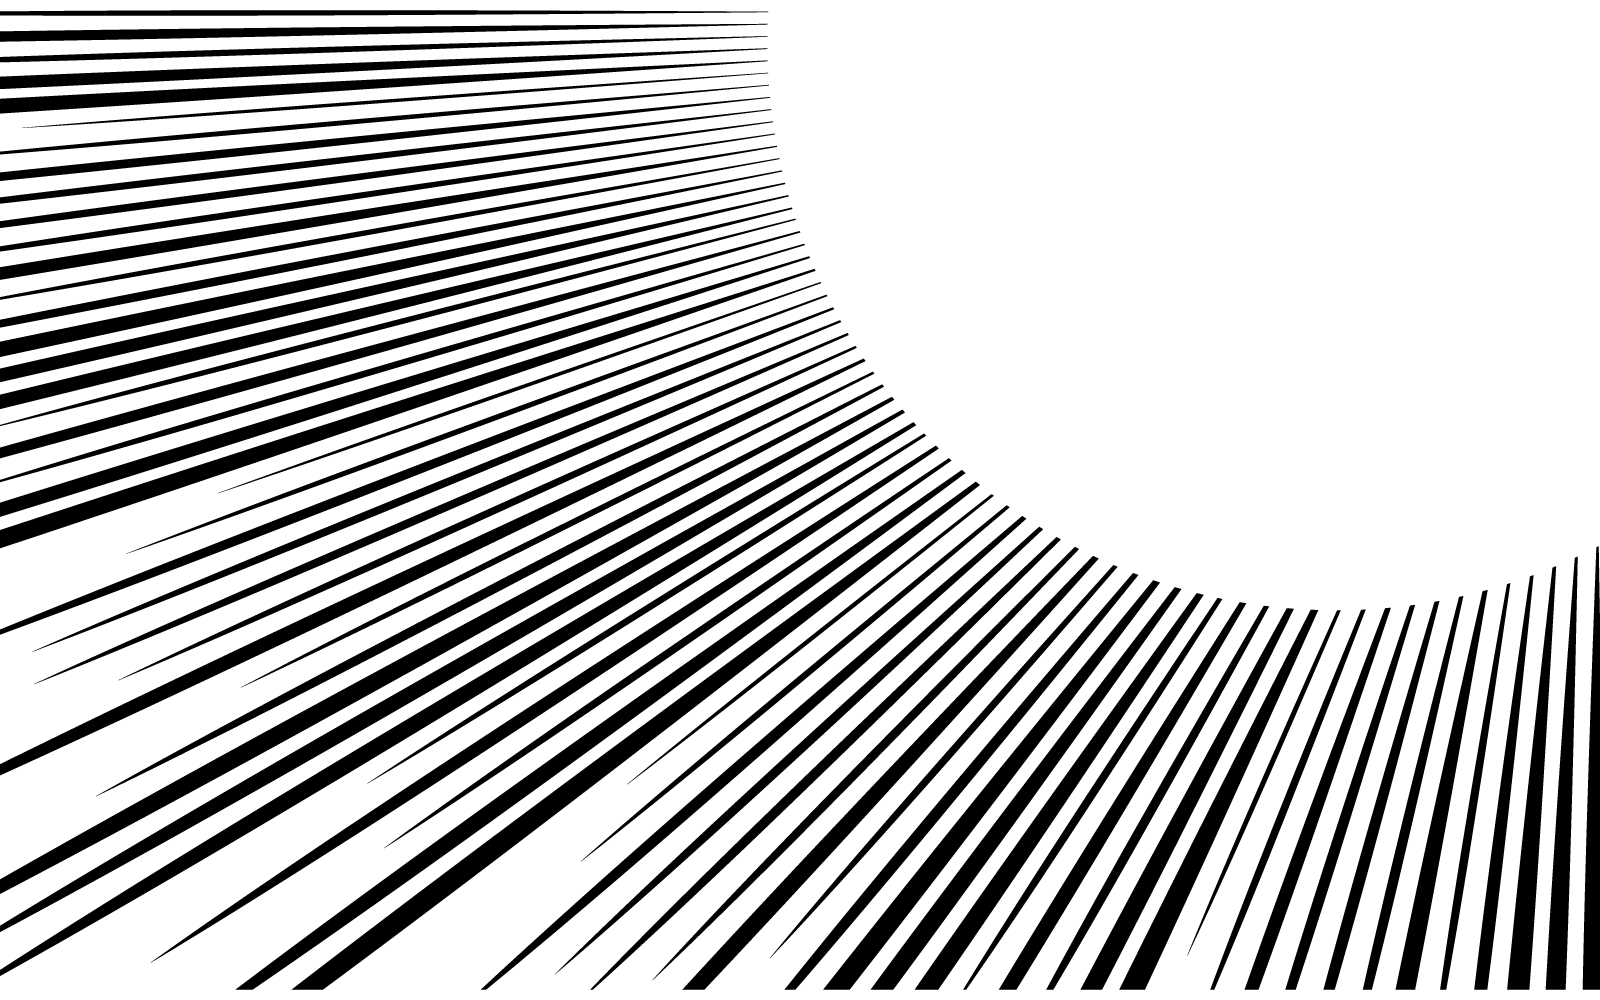 Speed line effect background flat design illustration vector